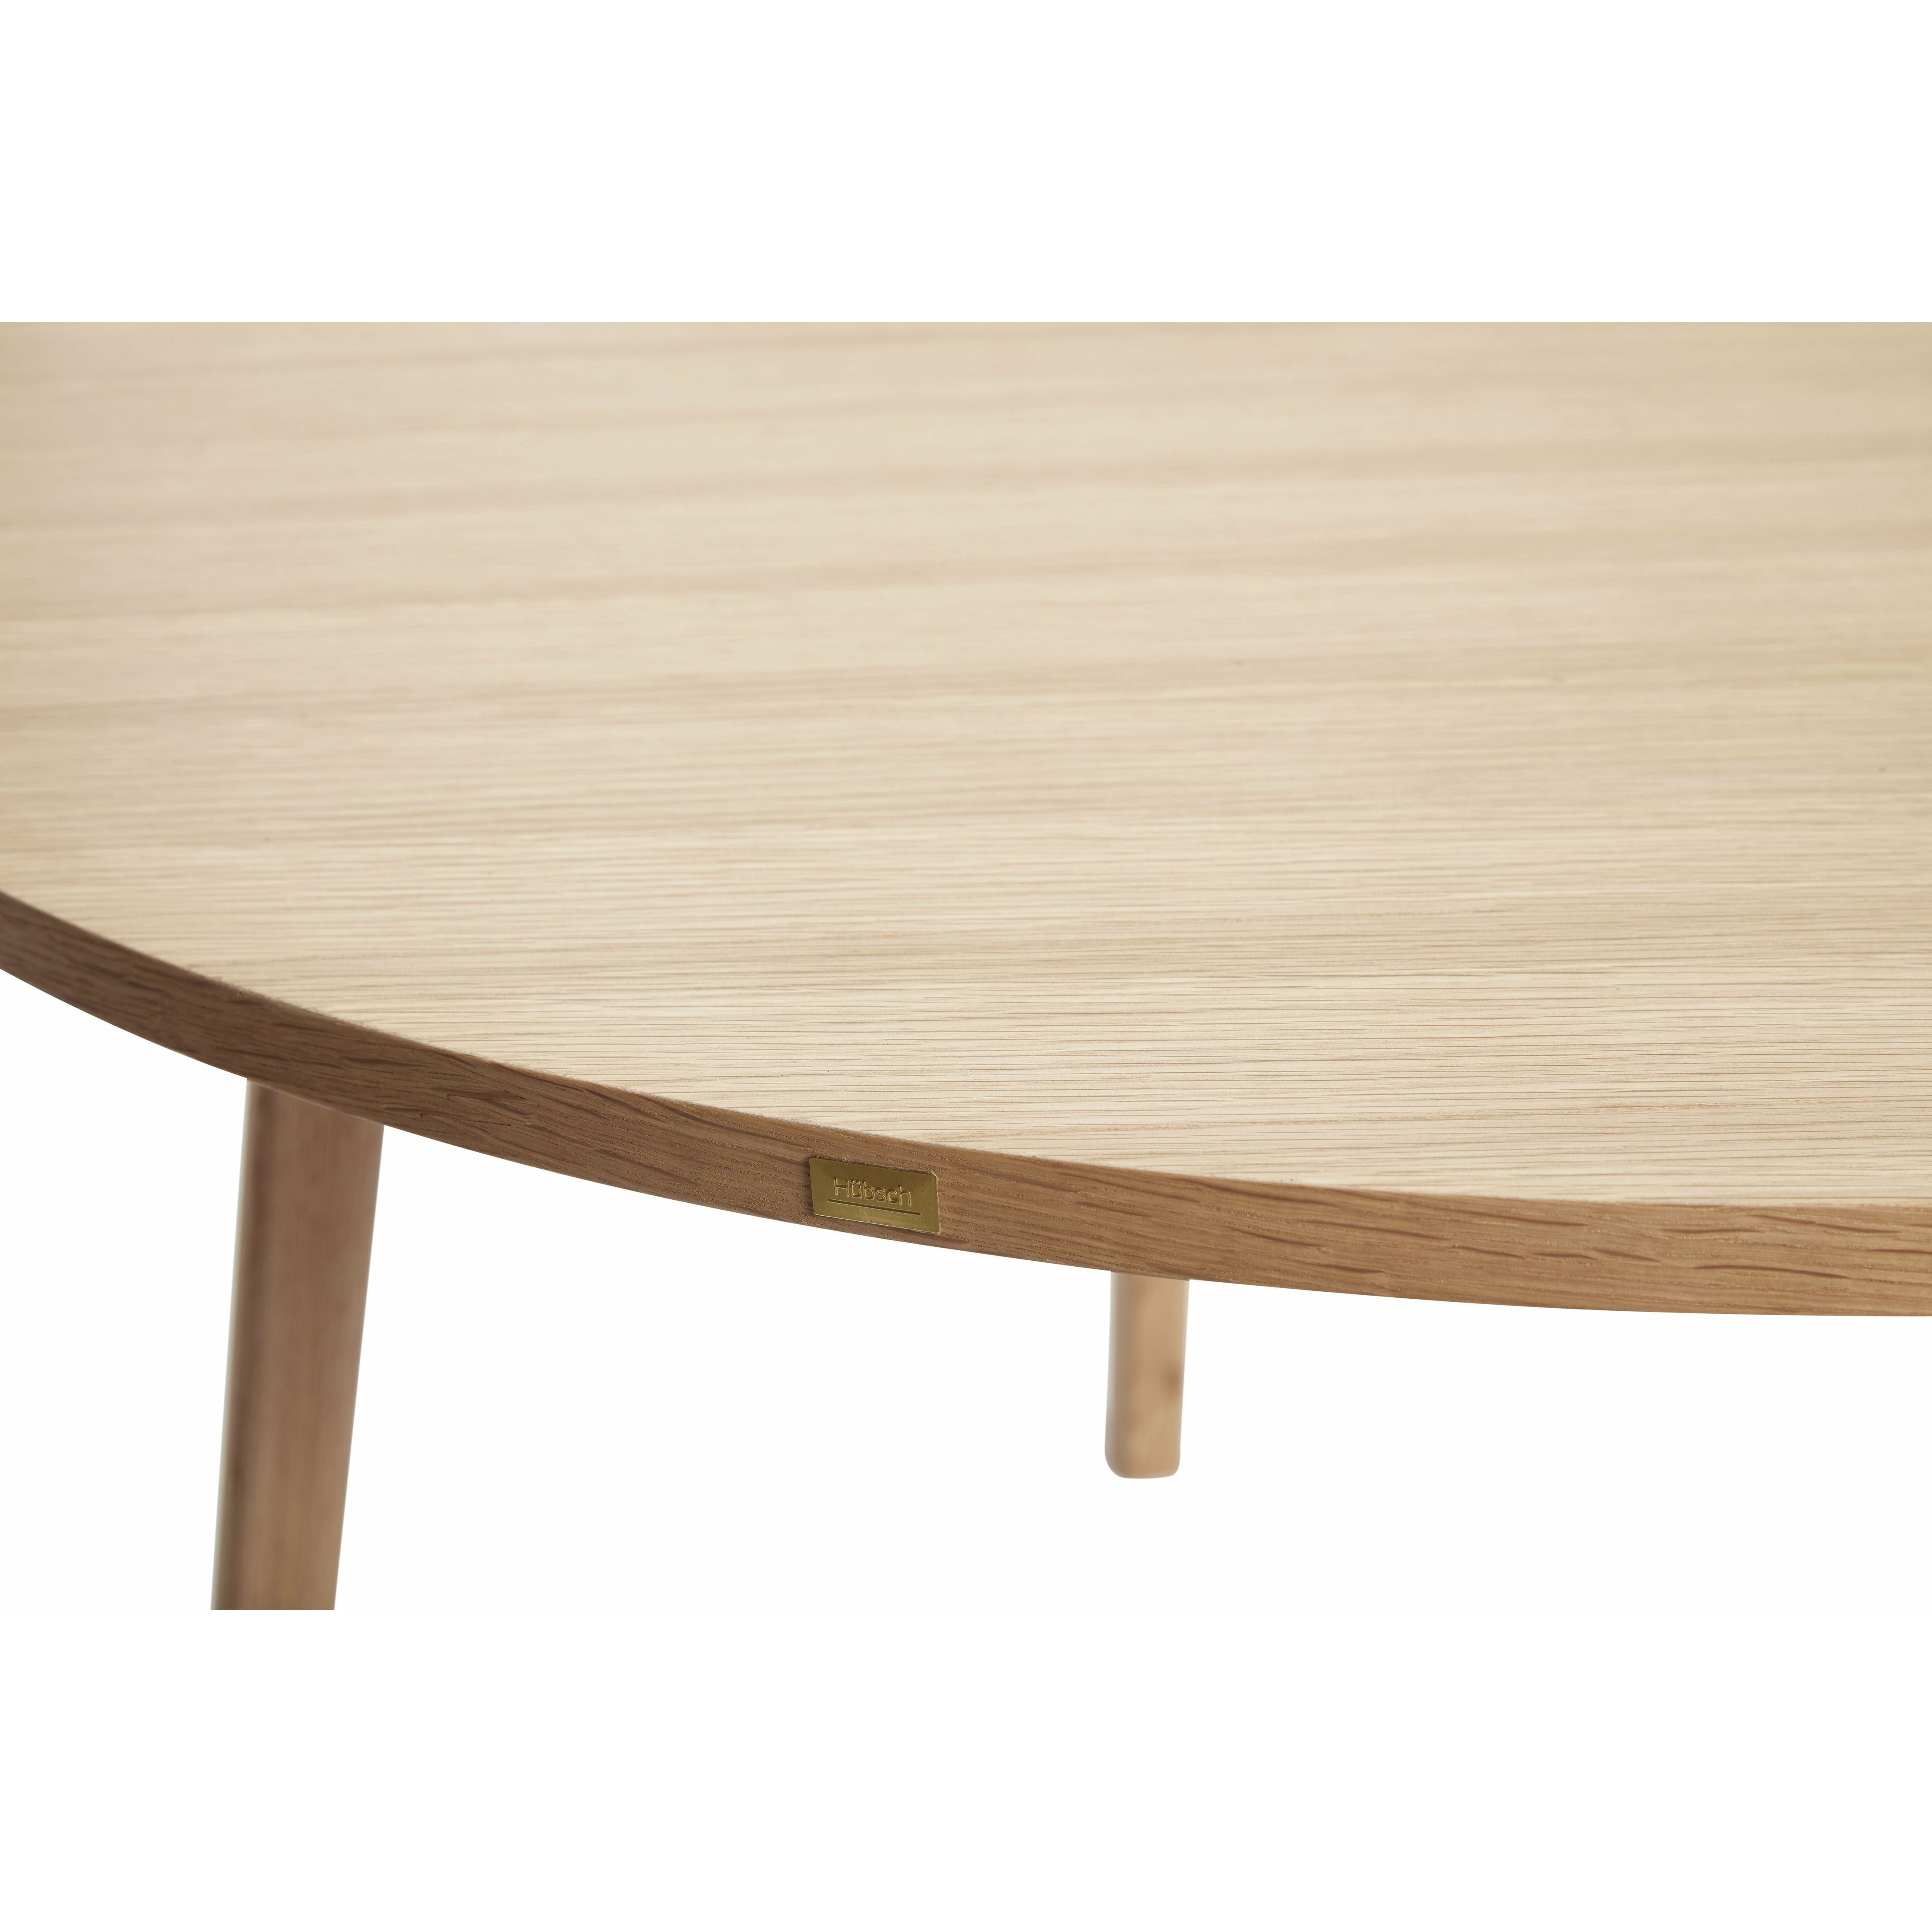 Hübsch Ground Jading Table Round Oak FSc Natural